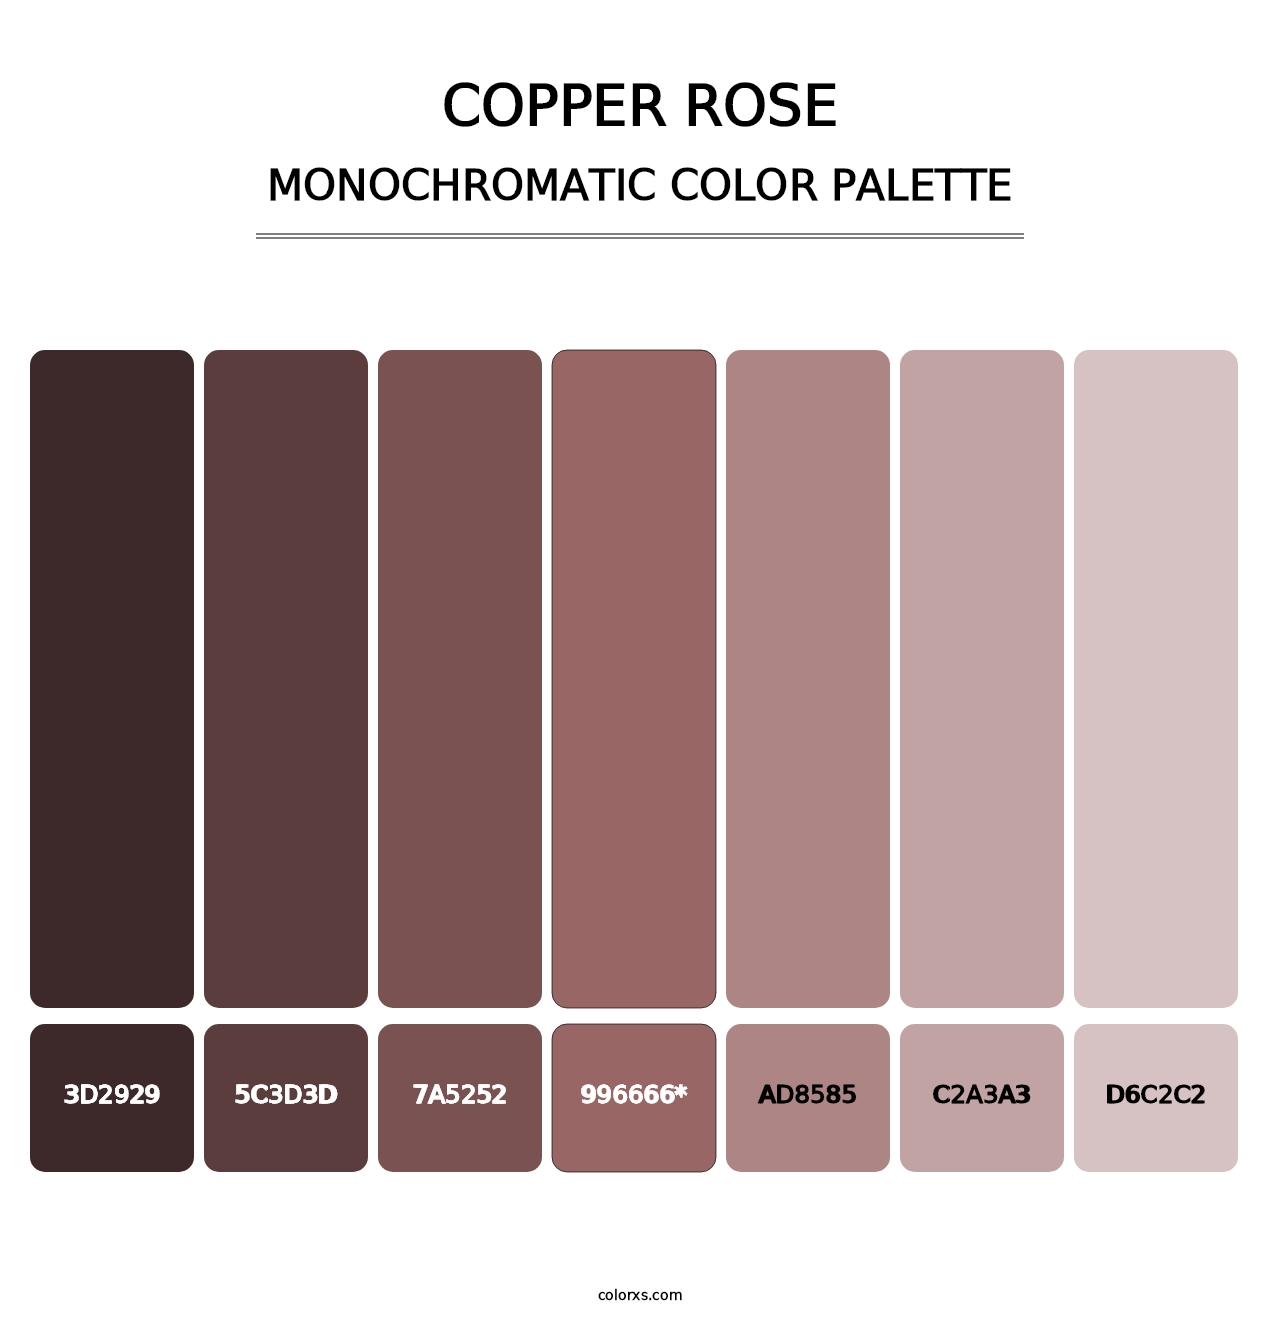 Copper rose - Monochromatic Color Palette